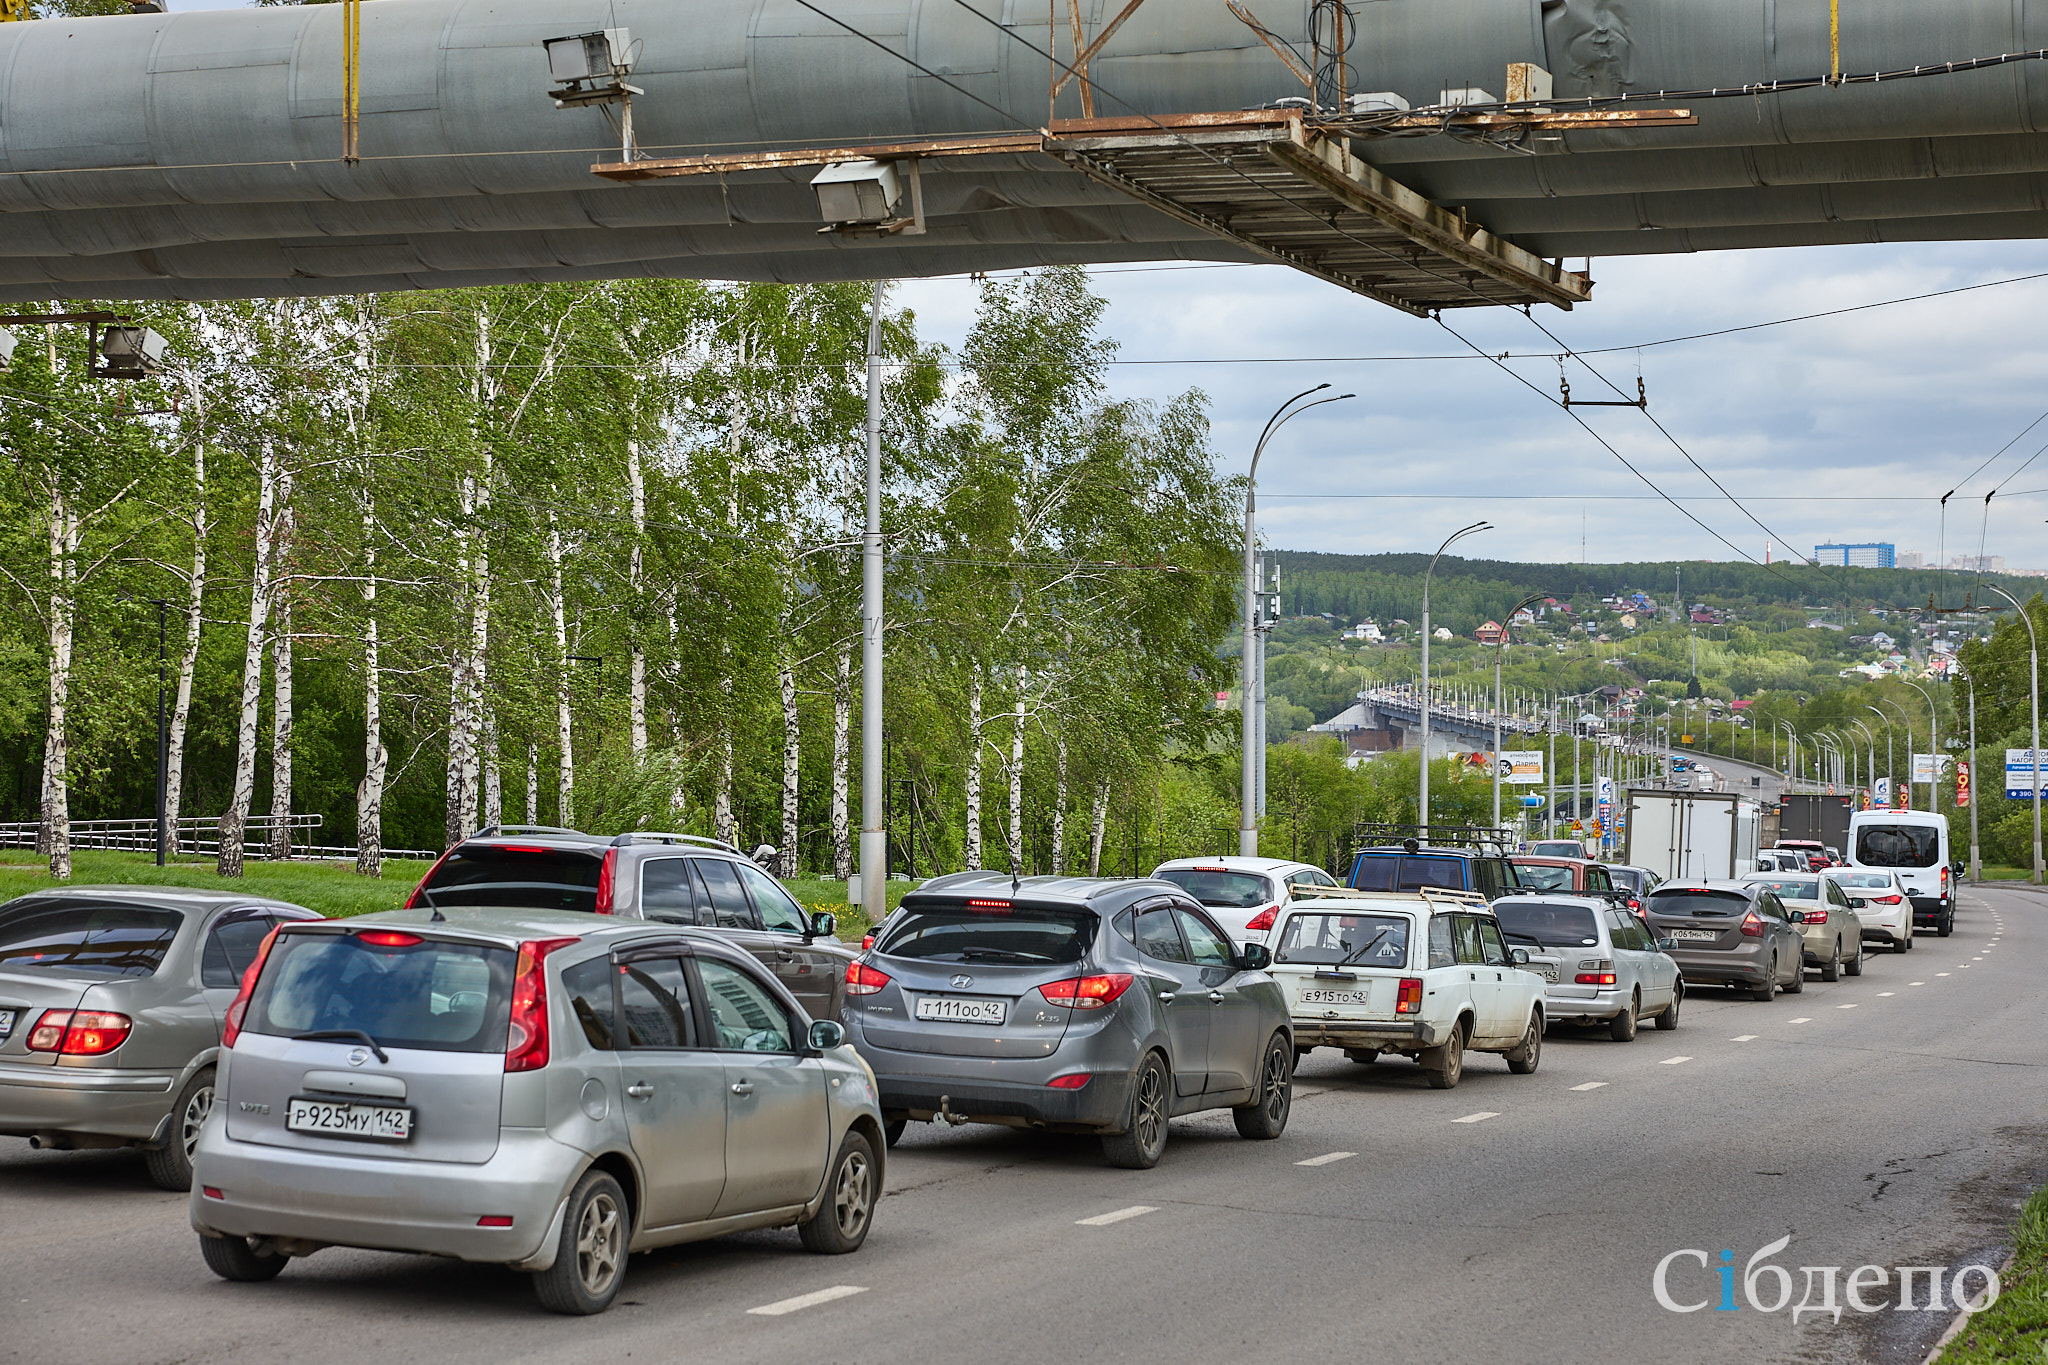 Ужасный час пик: перекрытие моста в Кемерове блокирует город в пробках